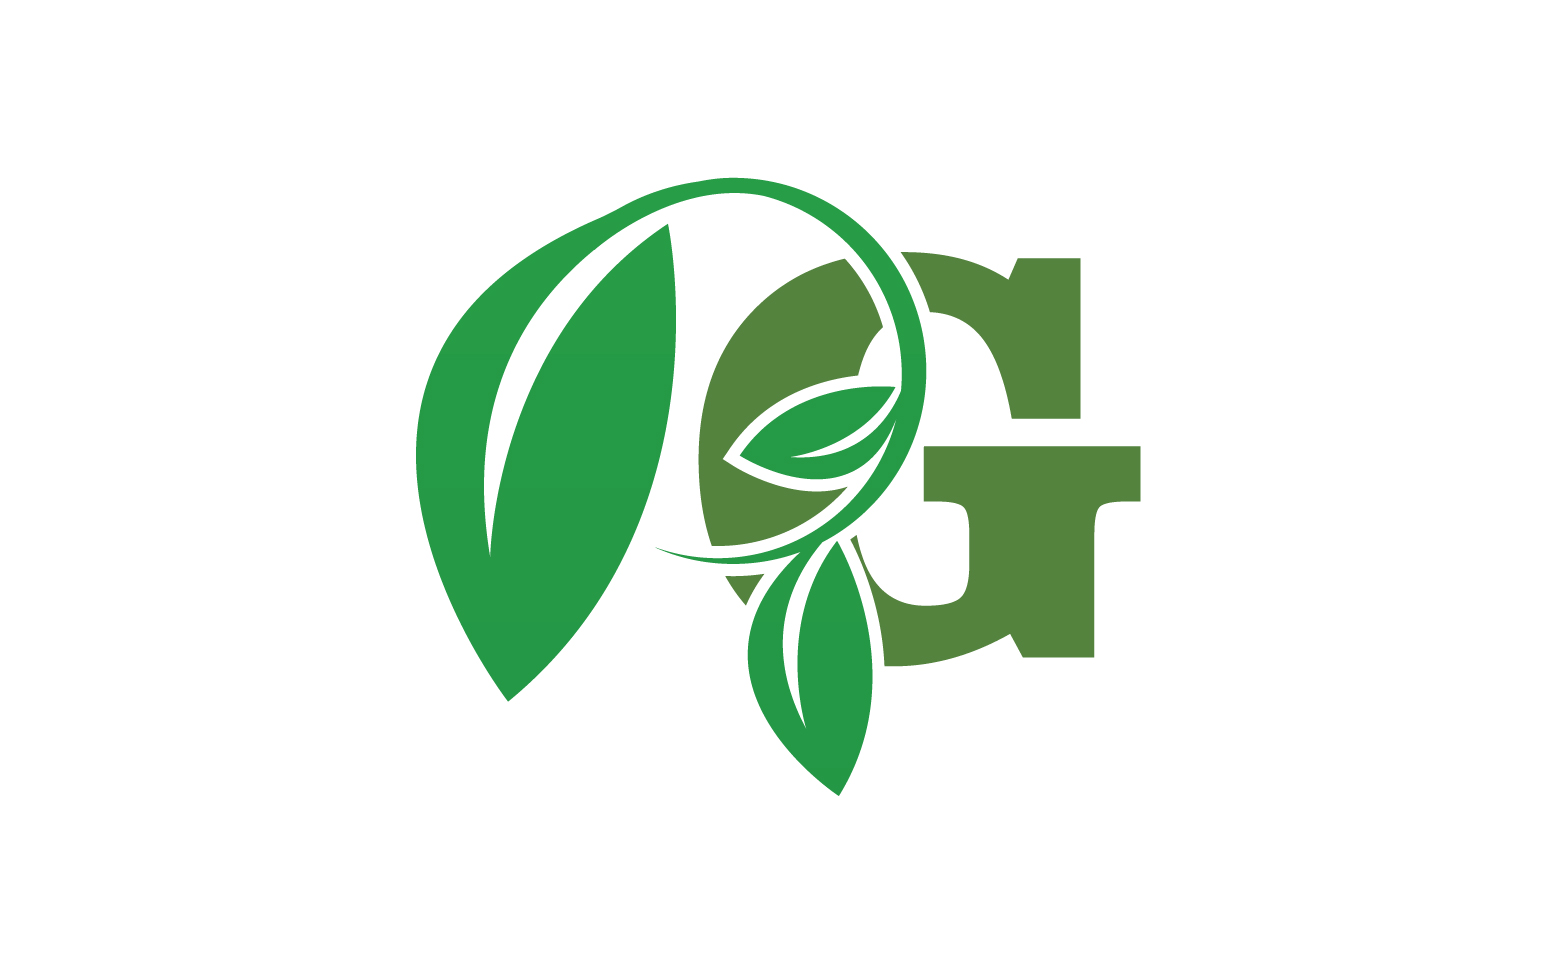 G letter leaf green logo icon version v56